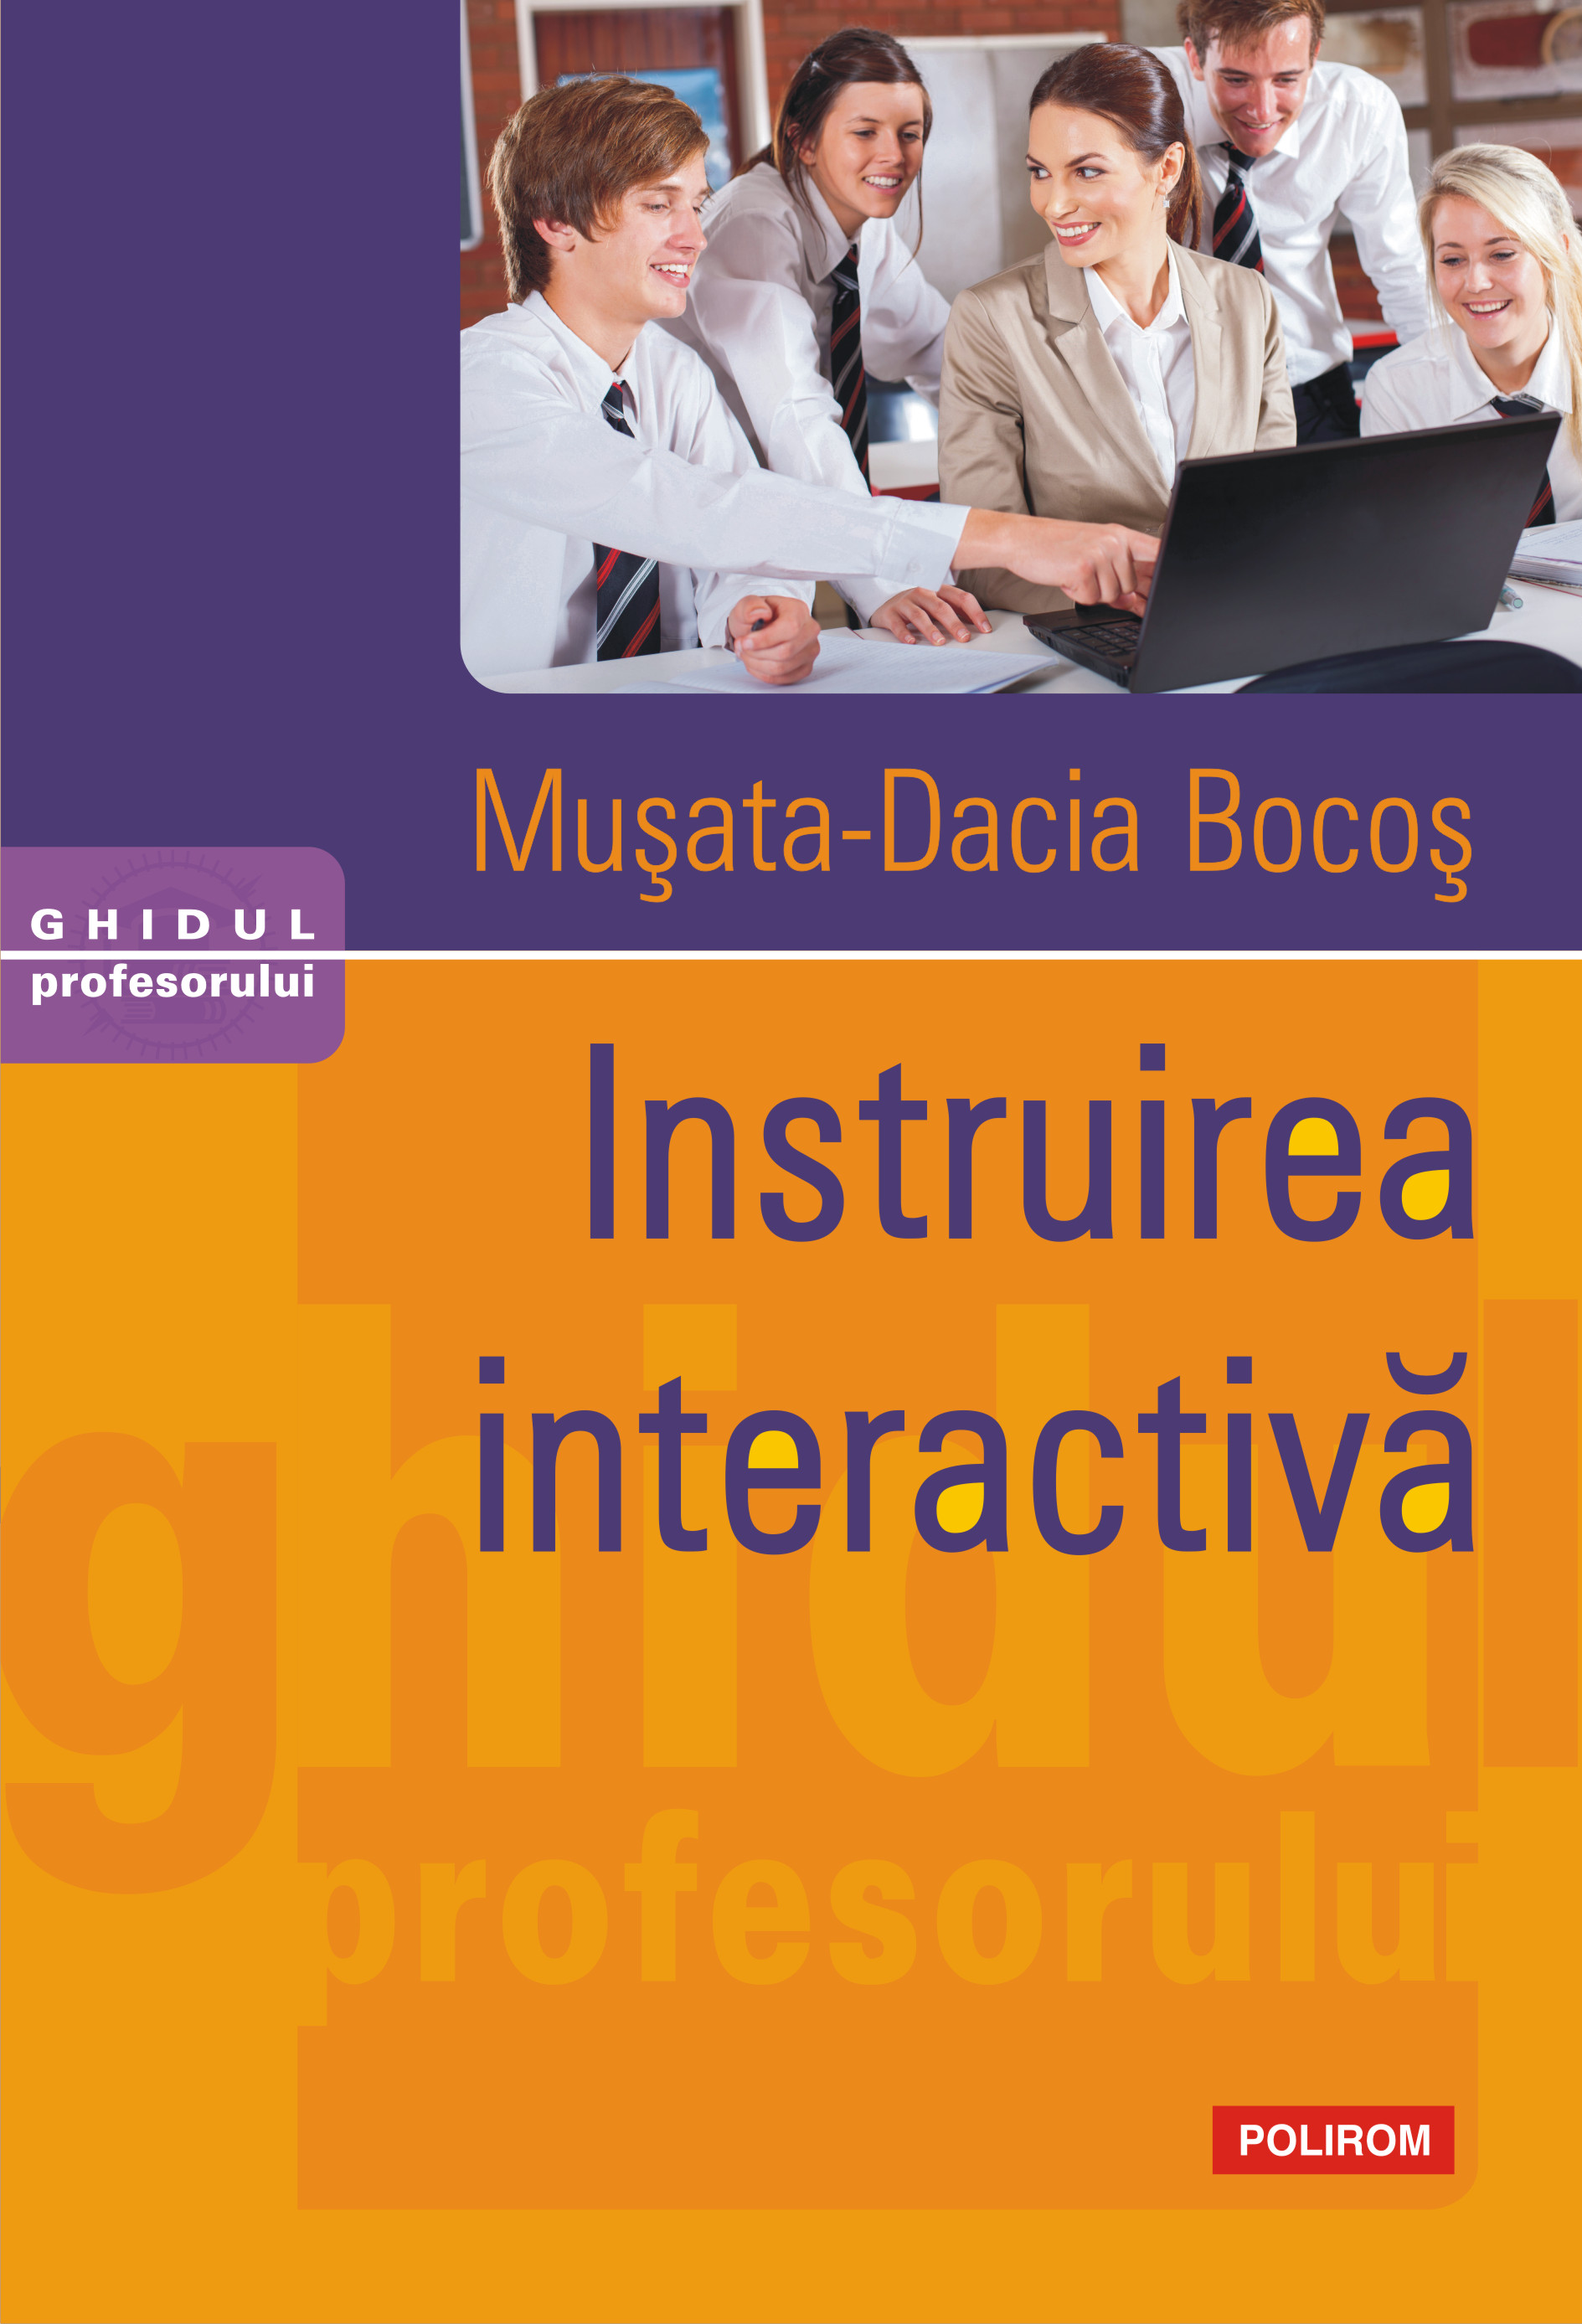 eBook Instruirea interactiva - Musata-Dacia Bocos